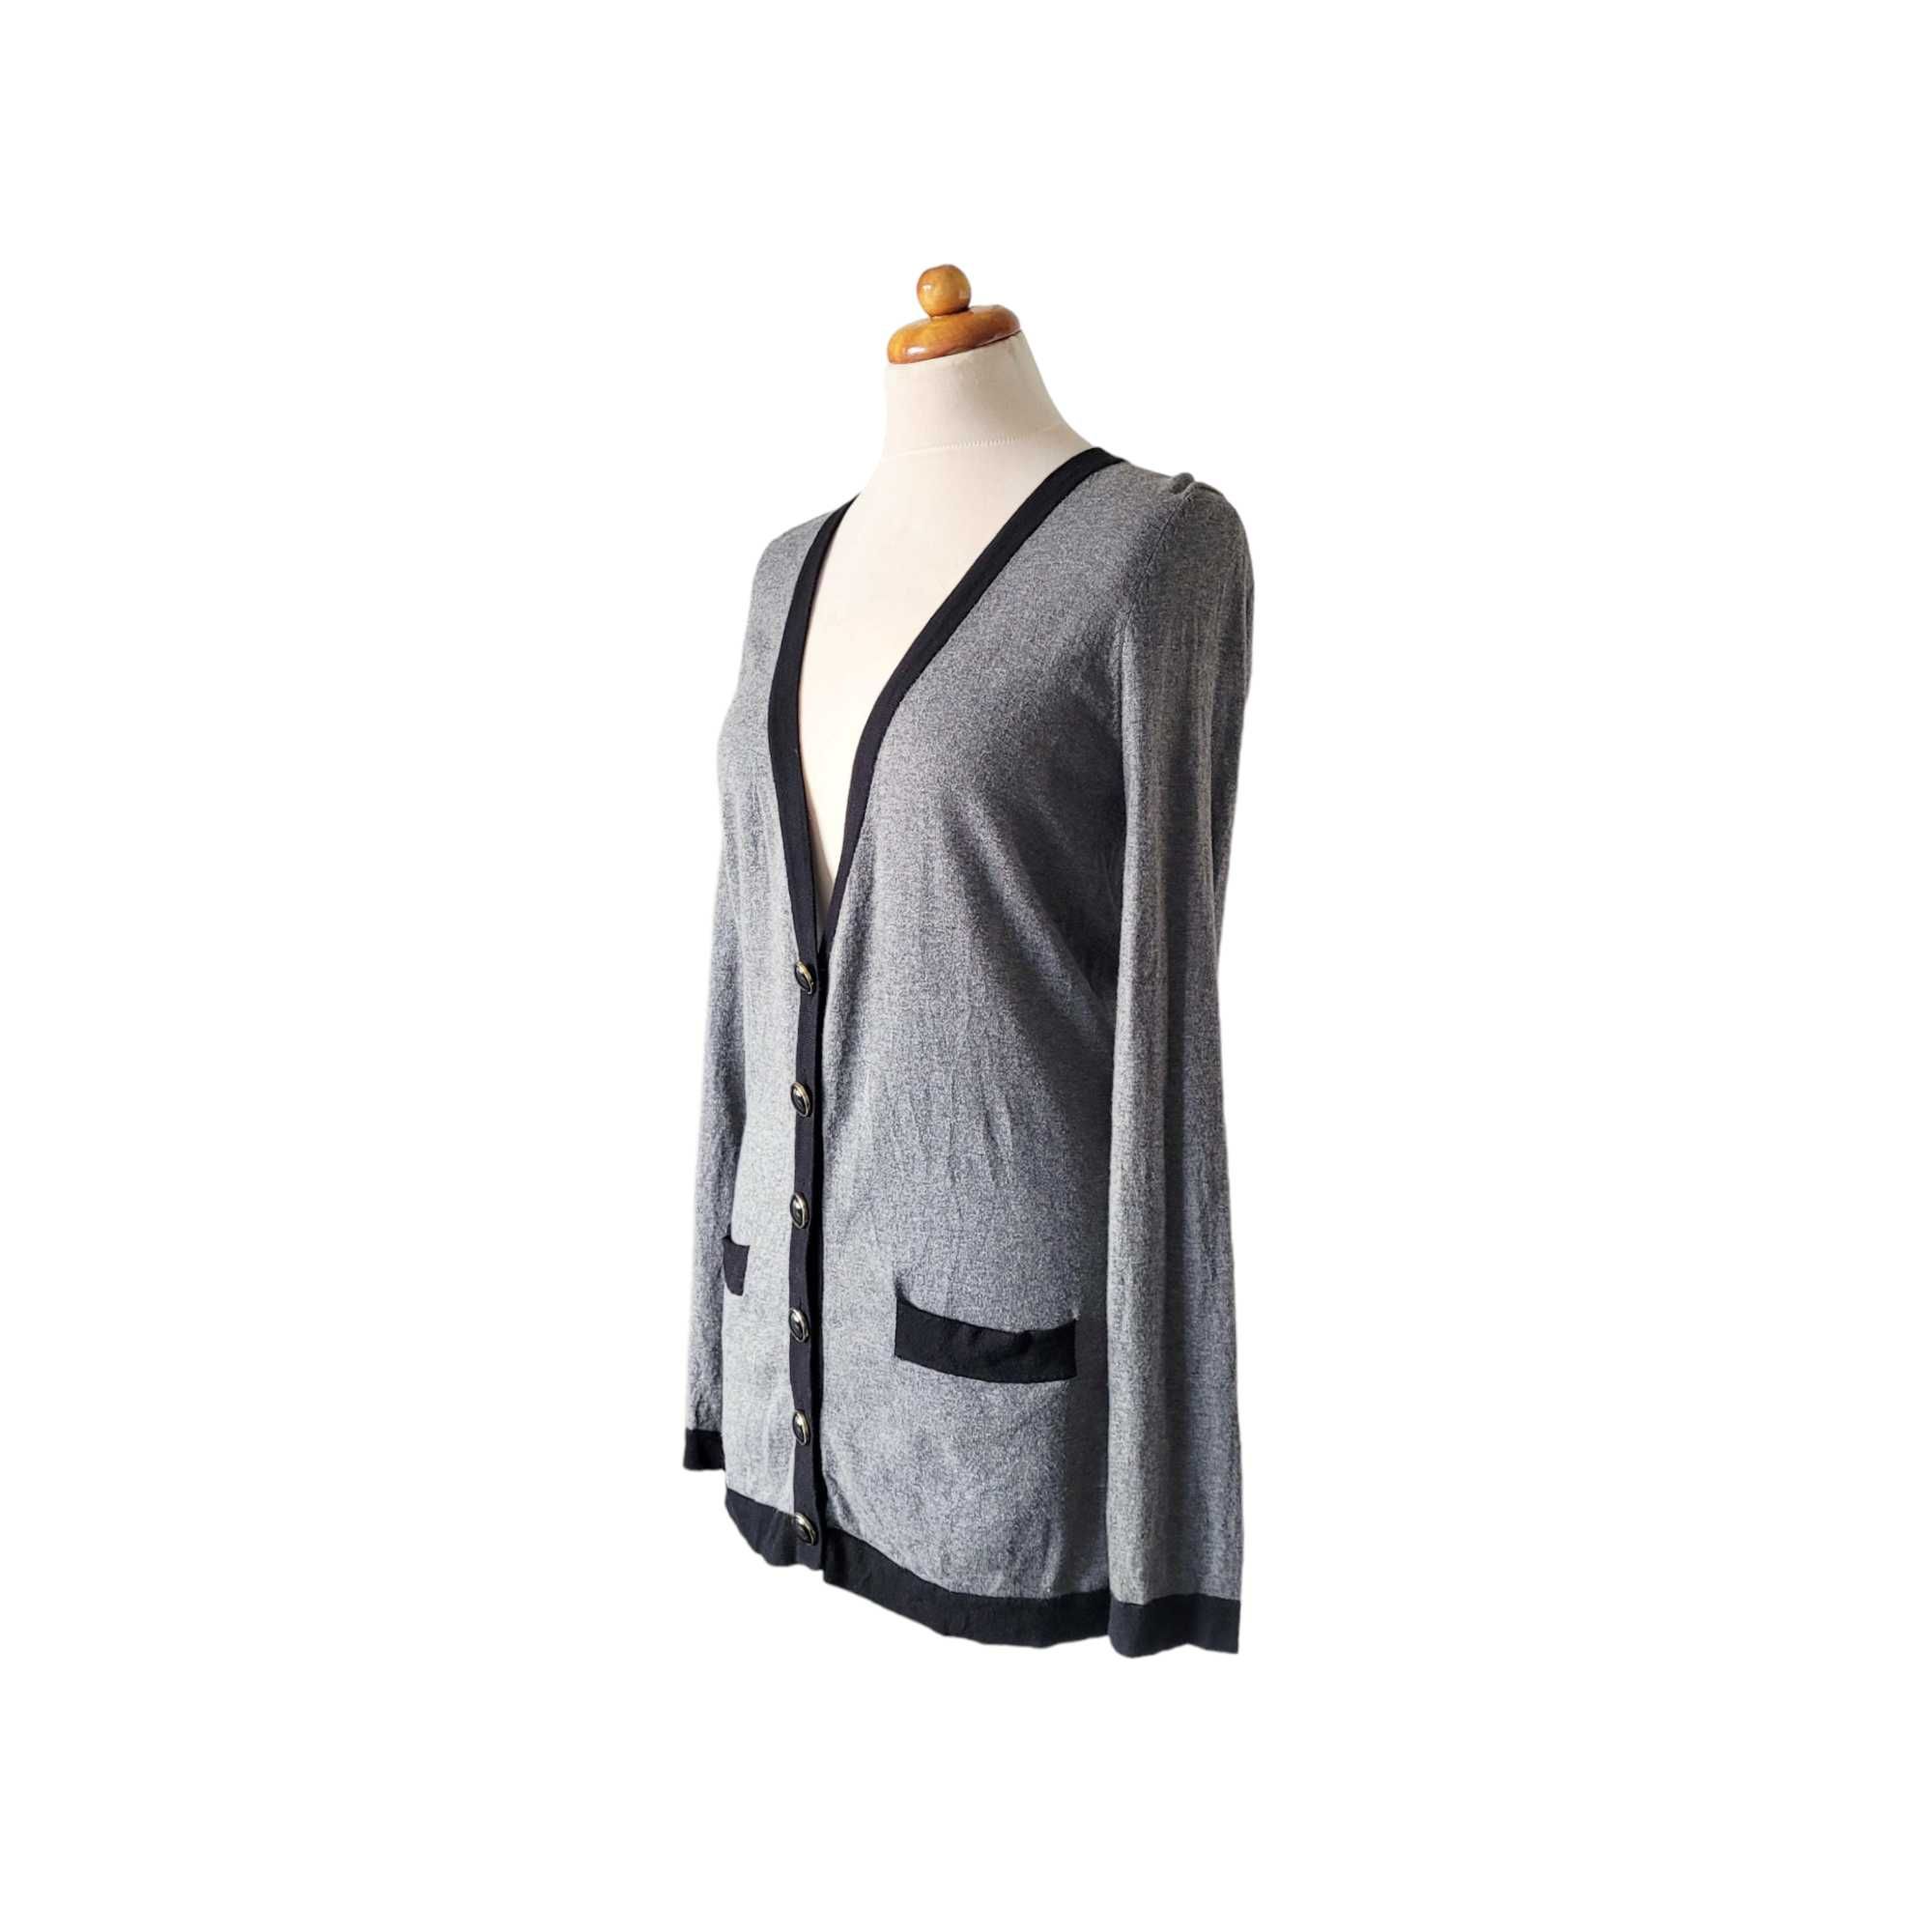 Szary kardigan damski sweter vintage retro M Next 85% bawełna 9% wełna